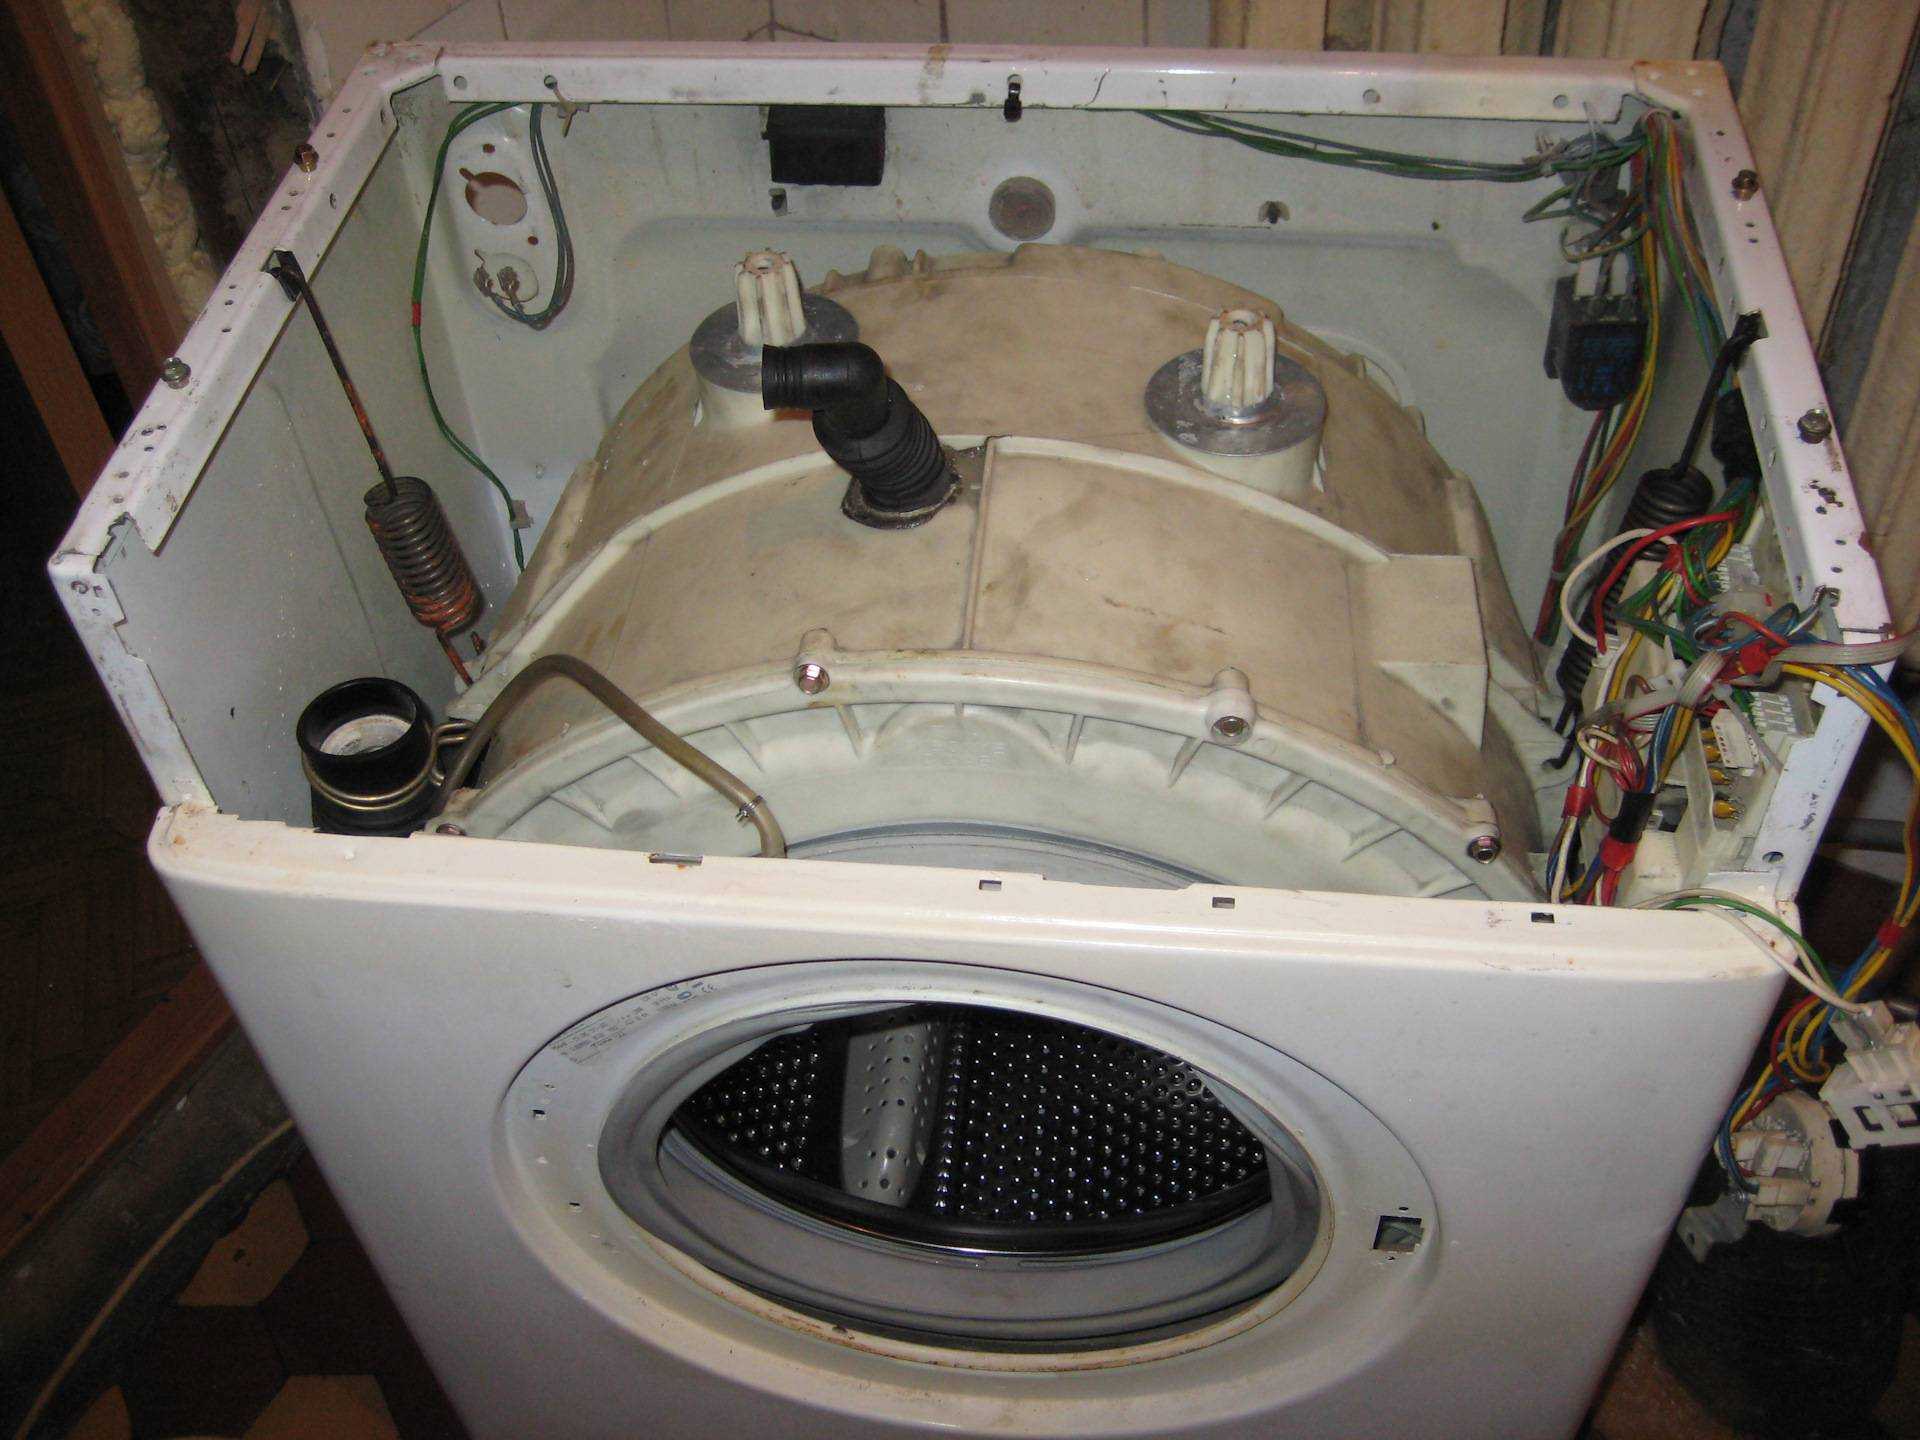 Как снять барабан на стиральной машине своими руками - жми!
как снять барабан на стиральной машине своими руками - жми!